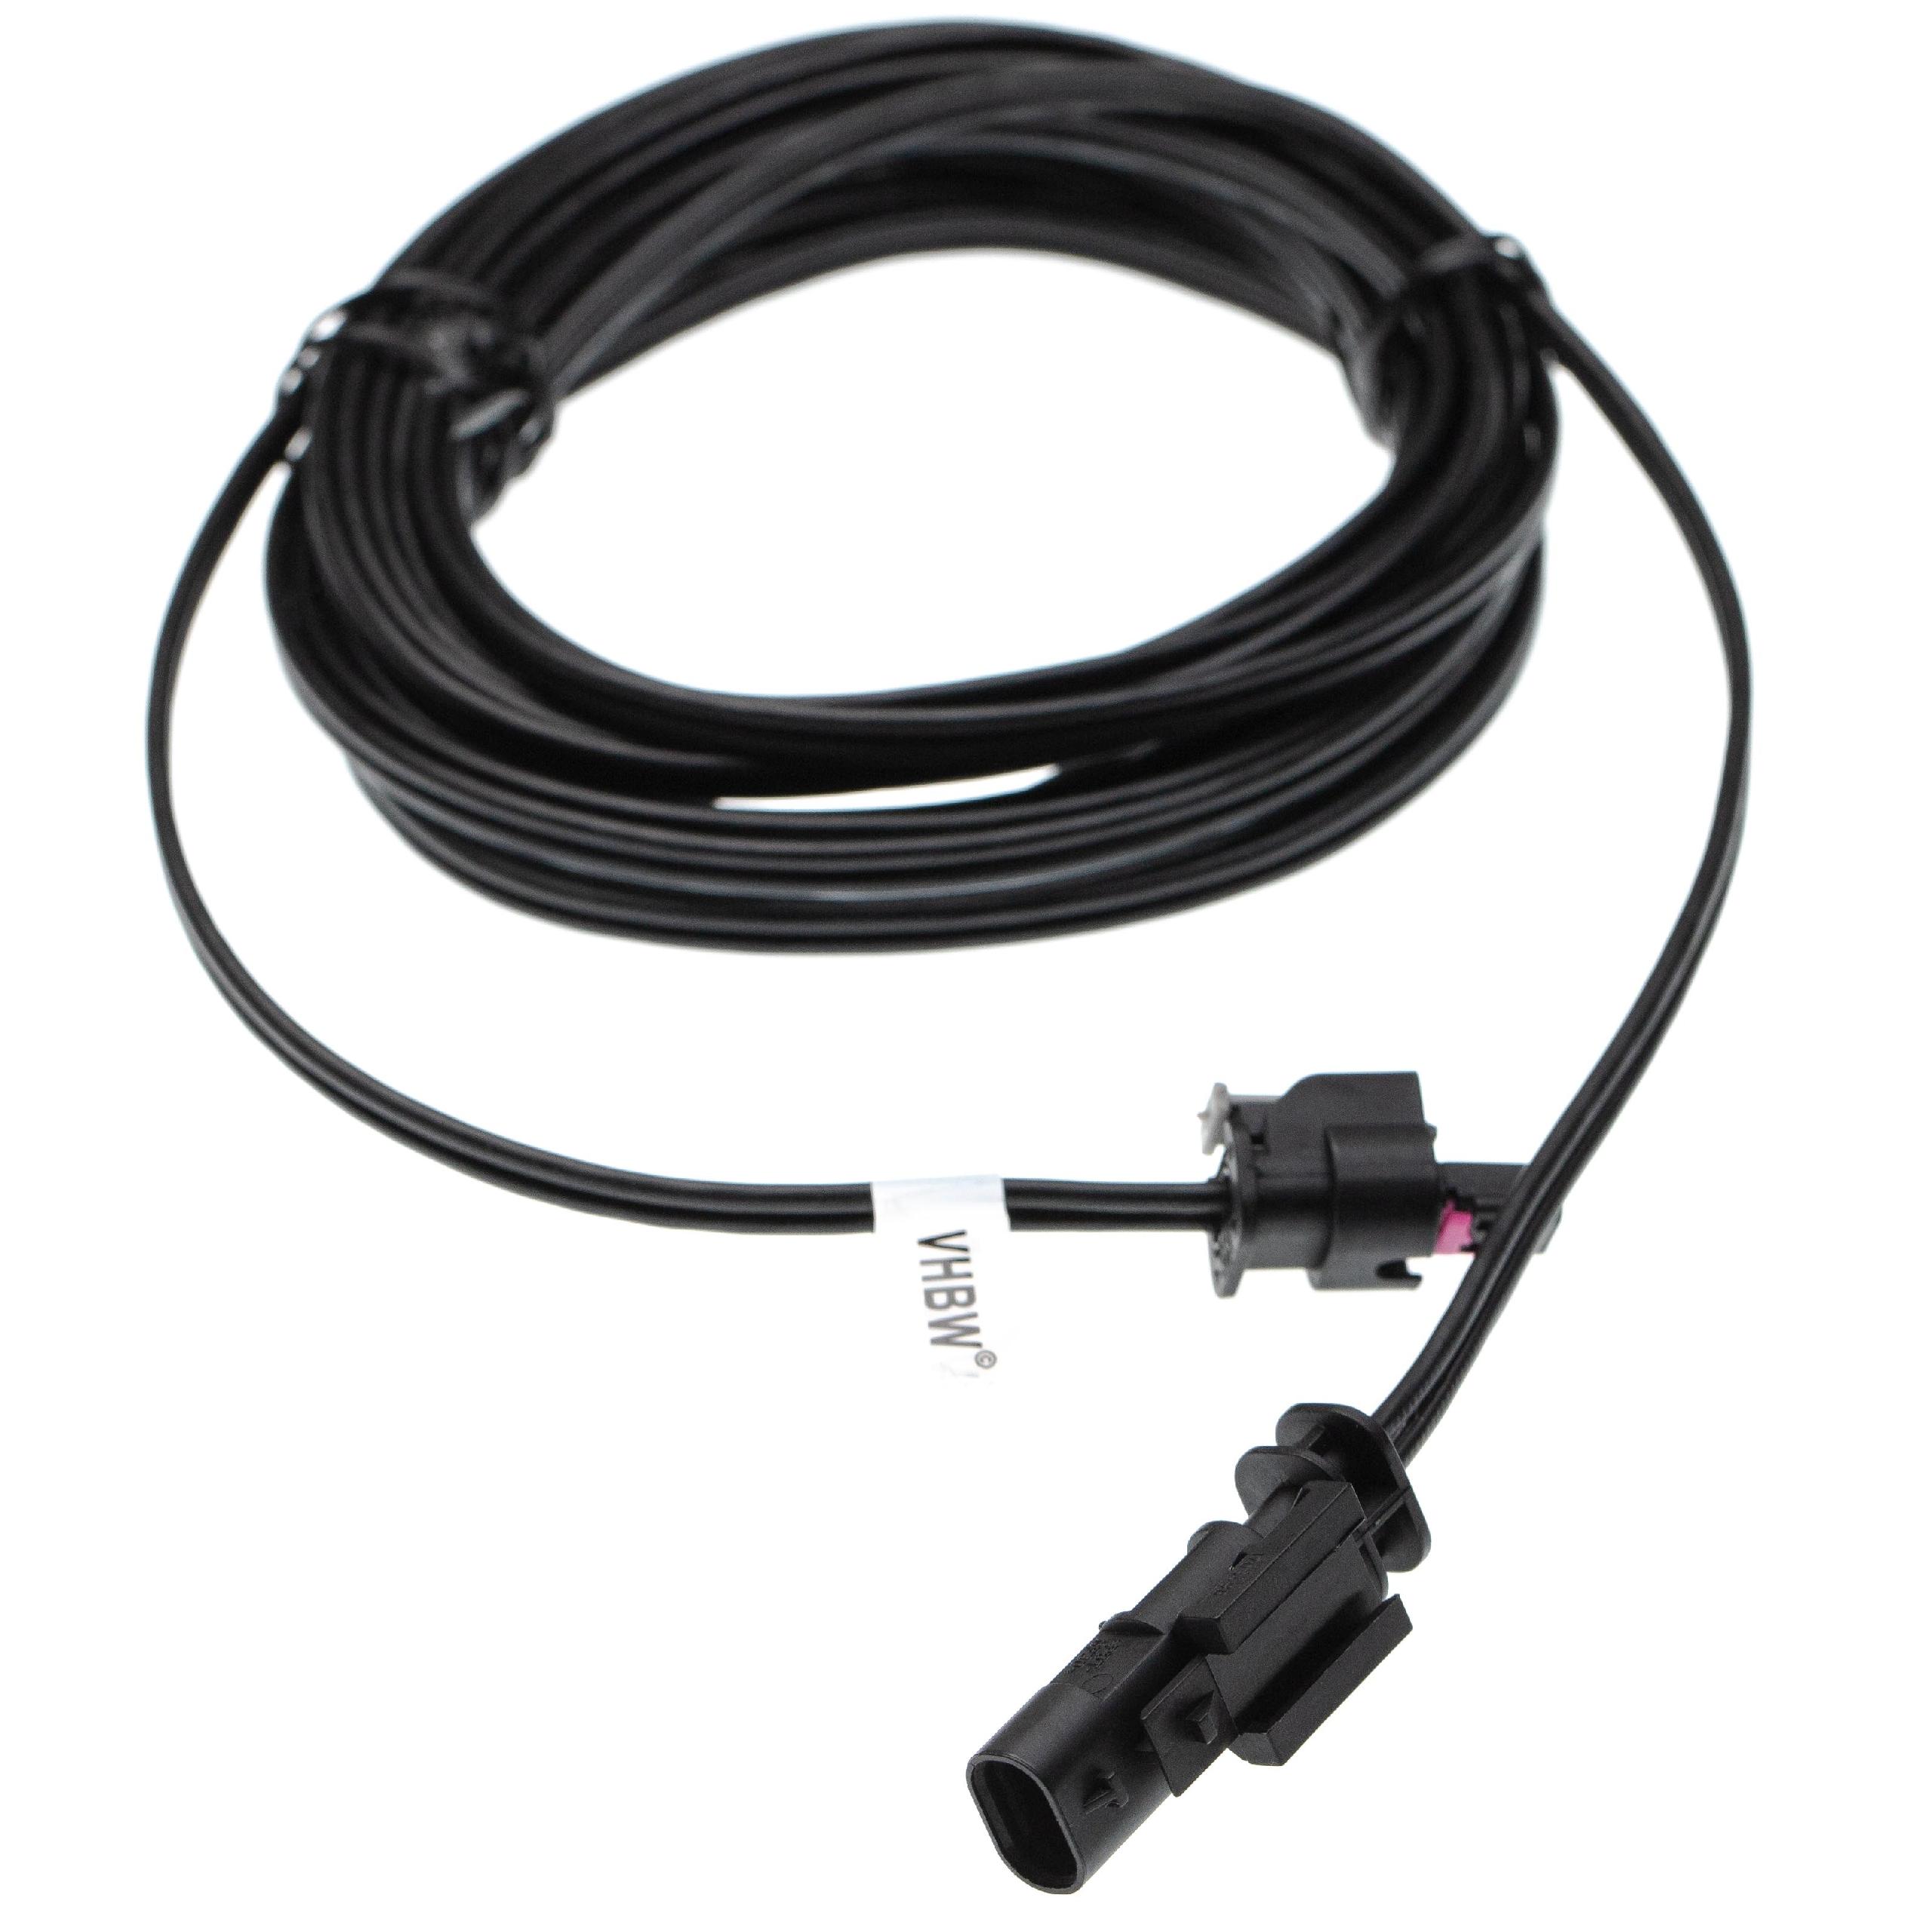 Câble de rechange pour Husqvarna 581 16 66-01, 581 16 66-02 pour robot tondeuse - Câble basse tension, 5 m